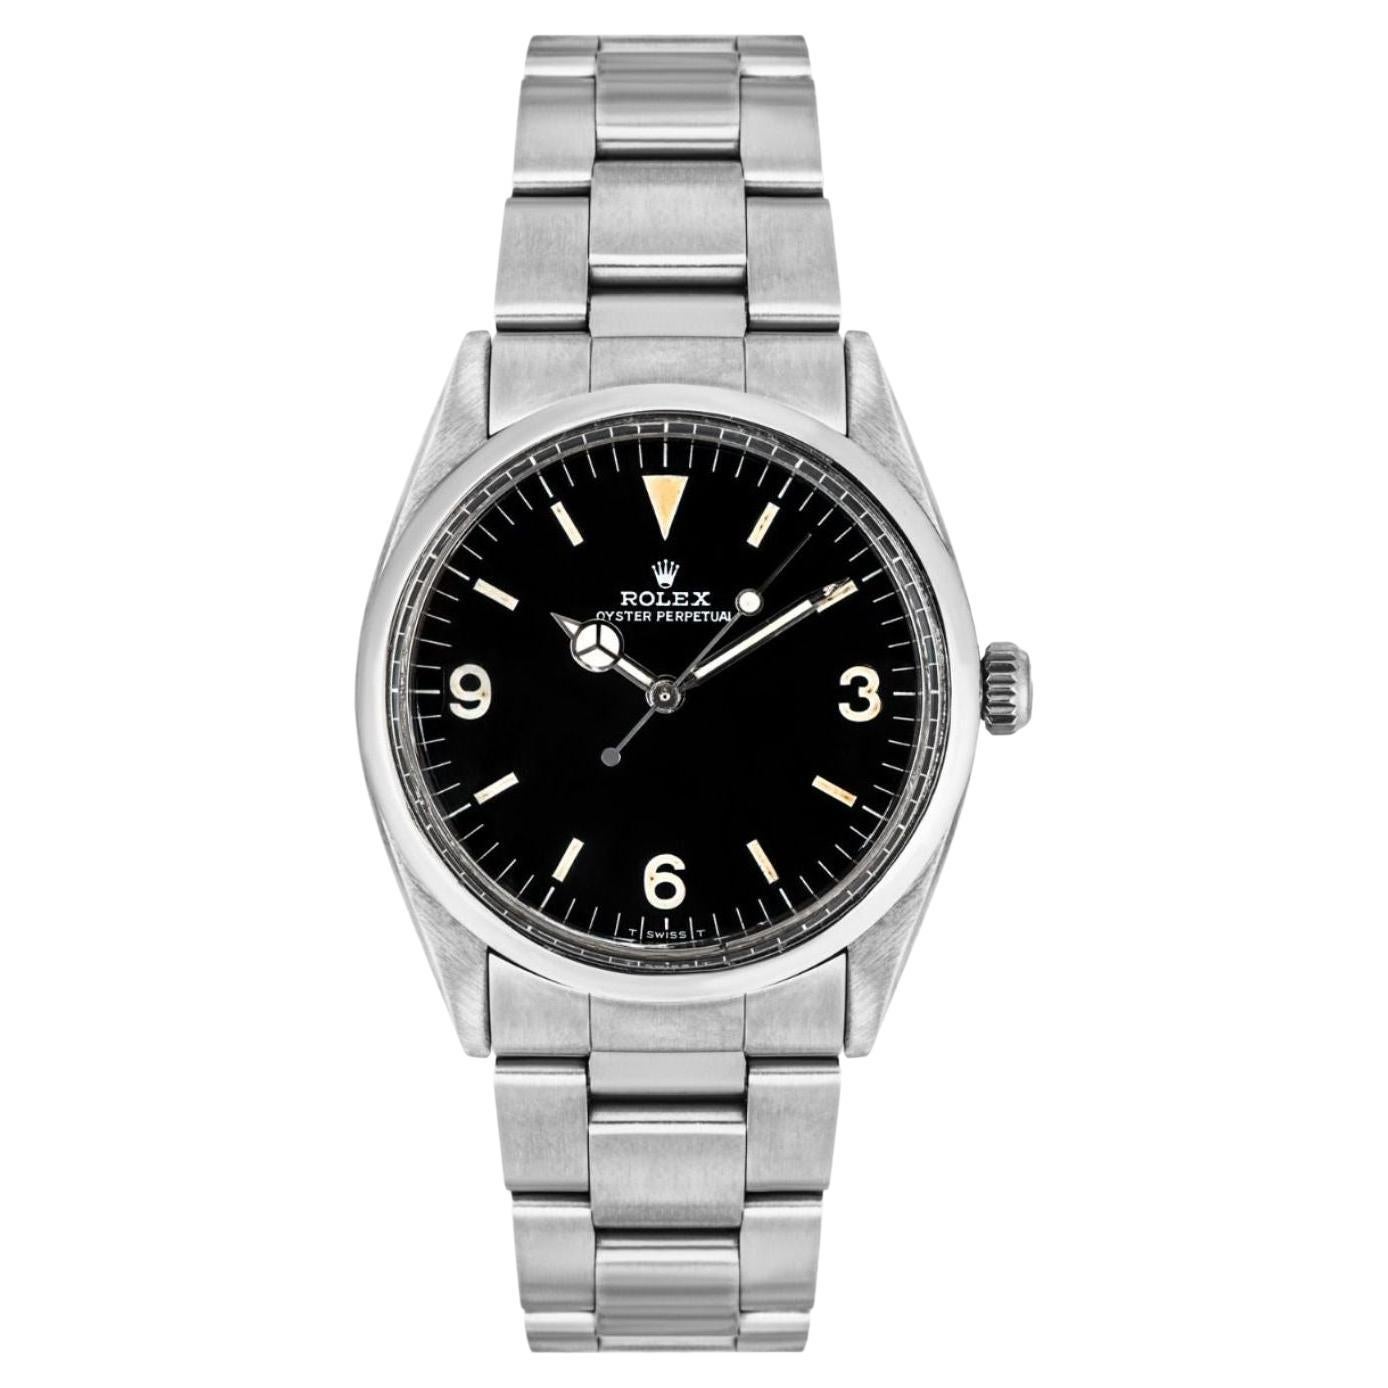 Vintage Rolex Explorer 5504 Watch